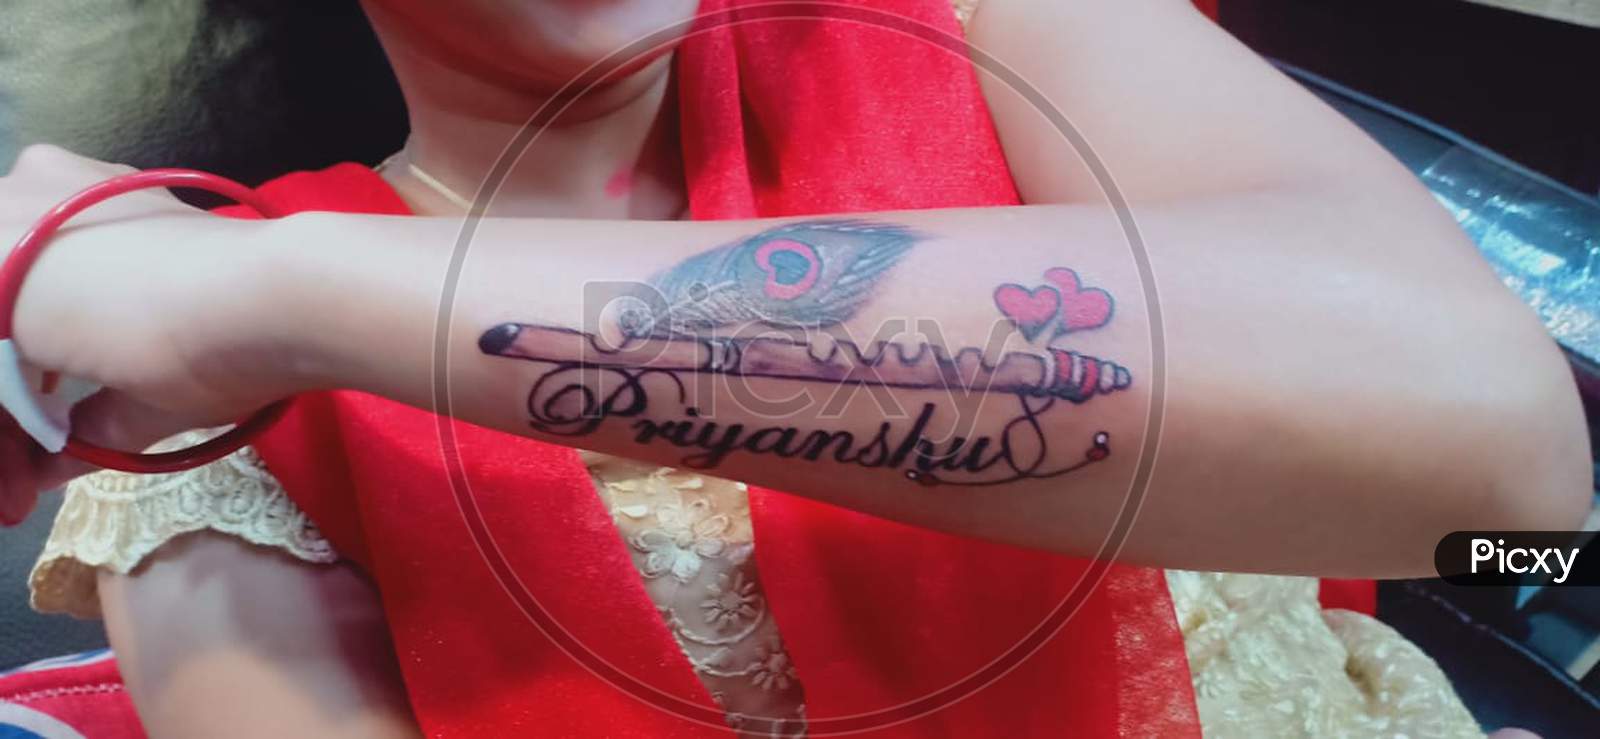 Namrata Shirodkar reveals her tattoo checkout mahesh babu and kids photos   नमरत शरडकर न फनस क डमड पर दखय टट शयर क महश बब और  बचच सग तसवर see pics 